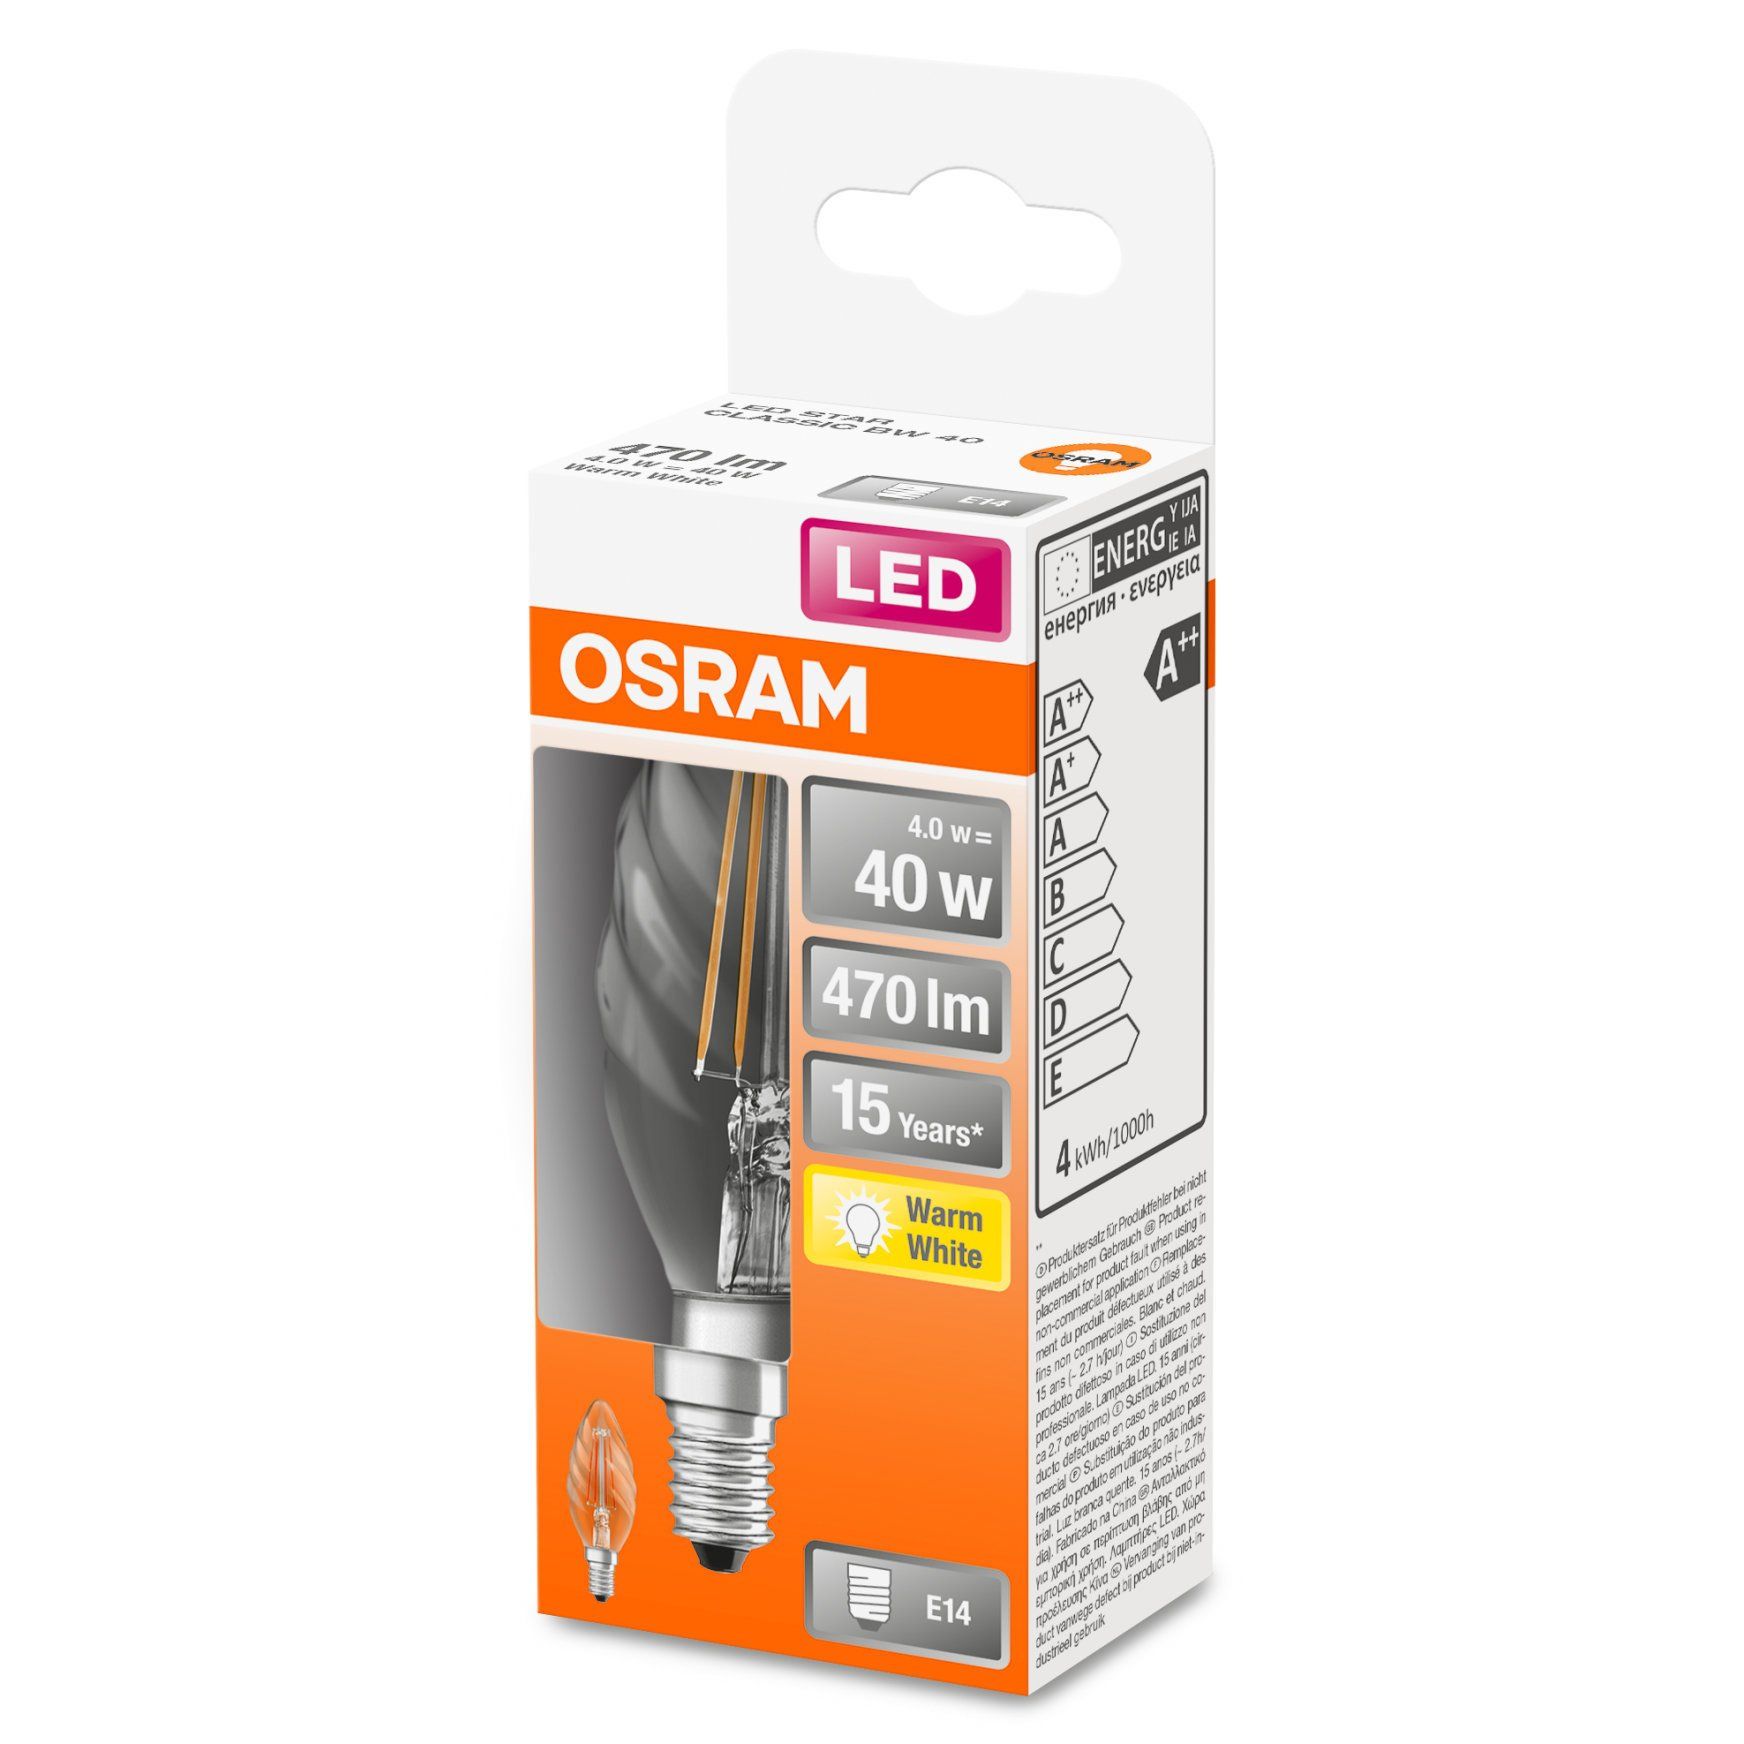 Ampoule LED bulbe douille E14, 4W 230V, blanc chaud à 3,95€